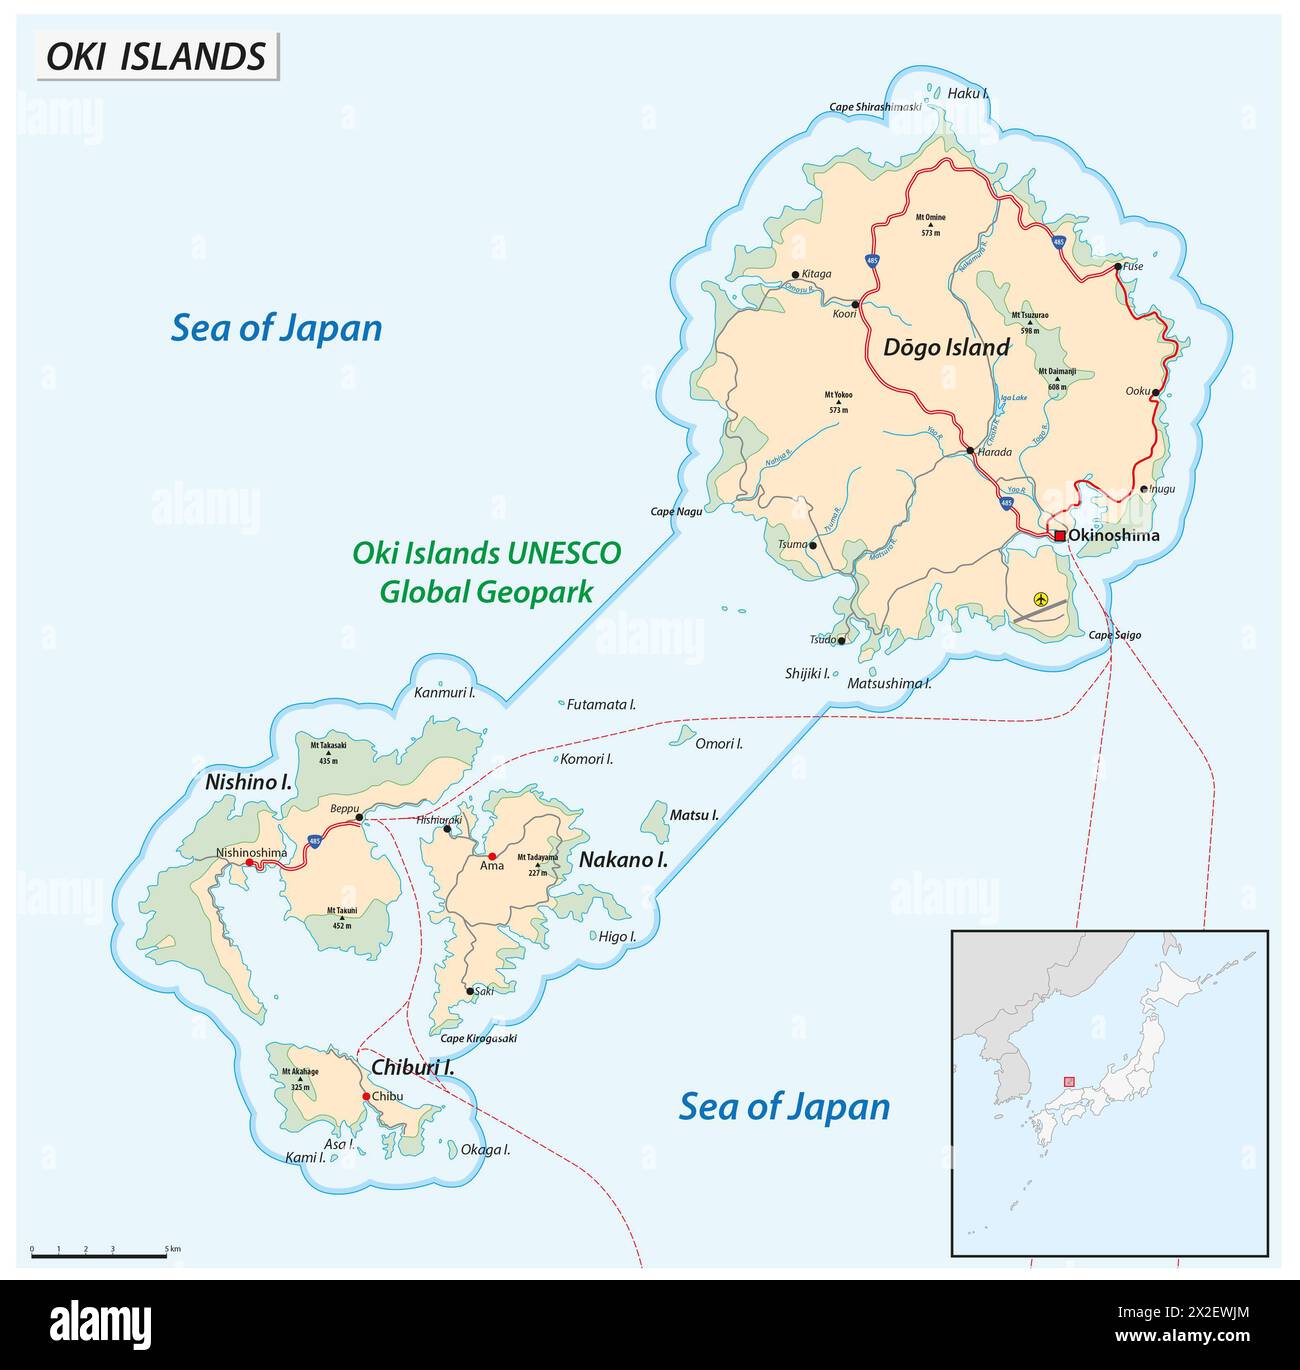 Mappa vettoriale dell'arcipelago giapponese delle isole Oki Foto Stock